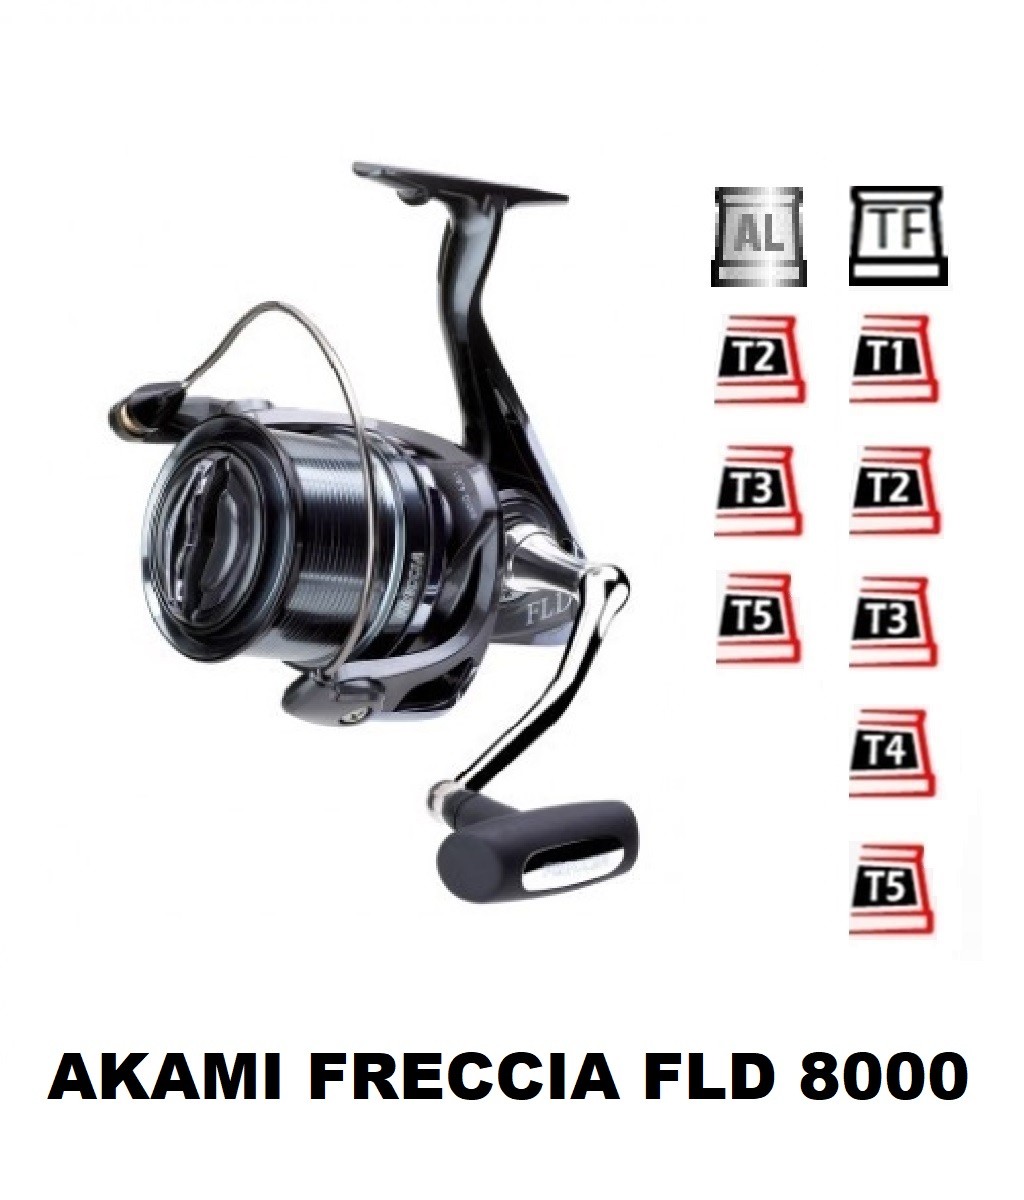 Akami Freccia FLD 8000